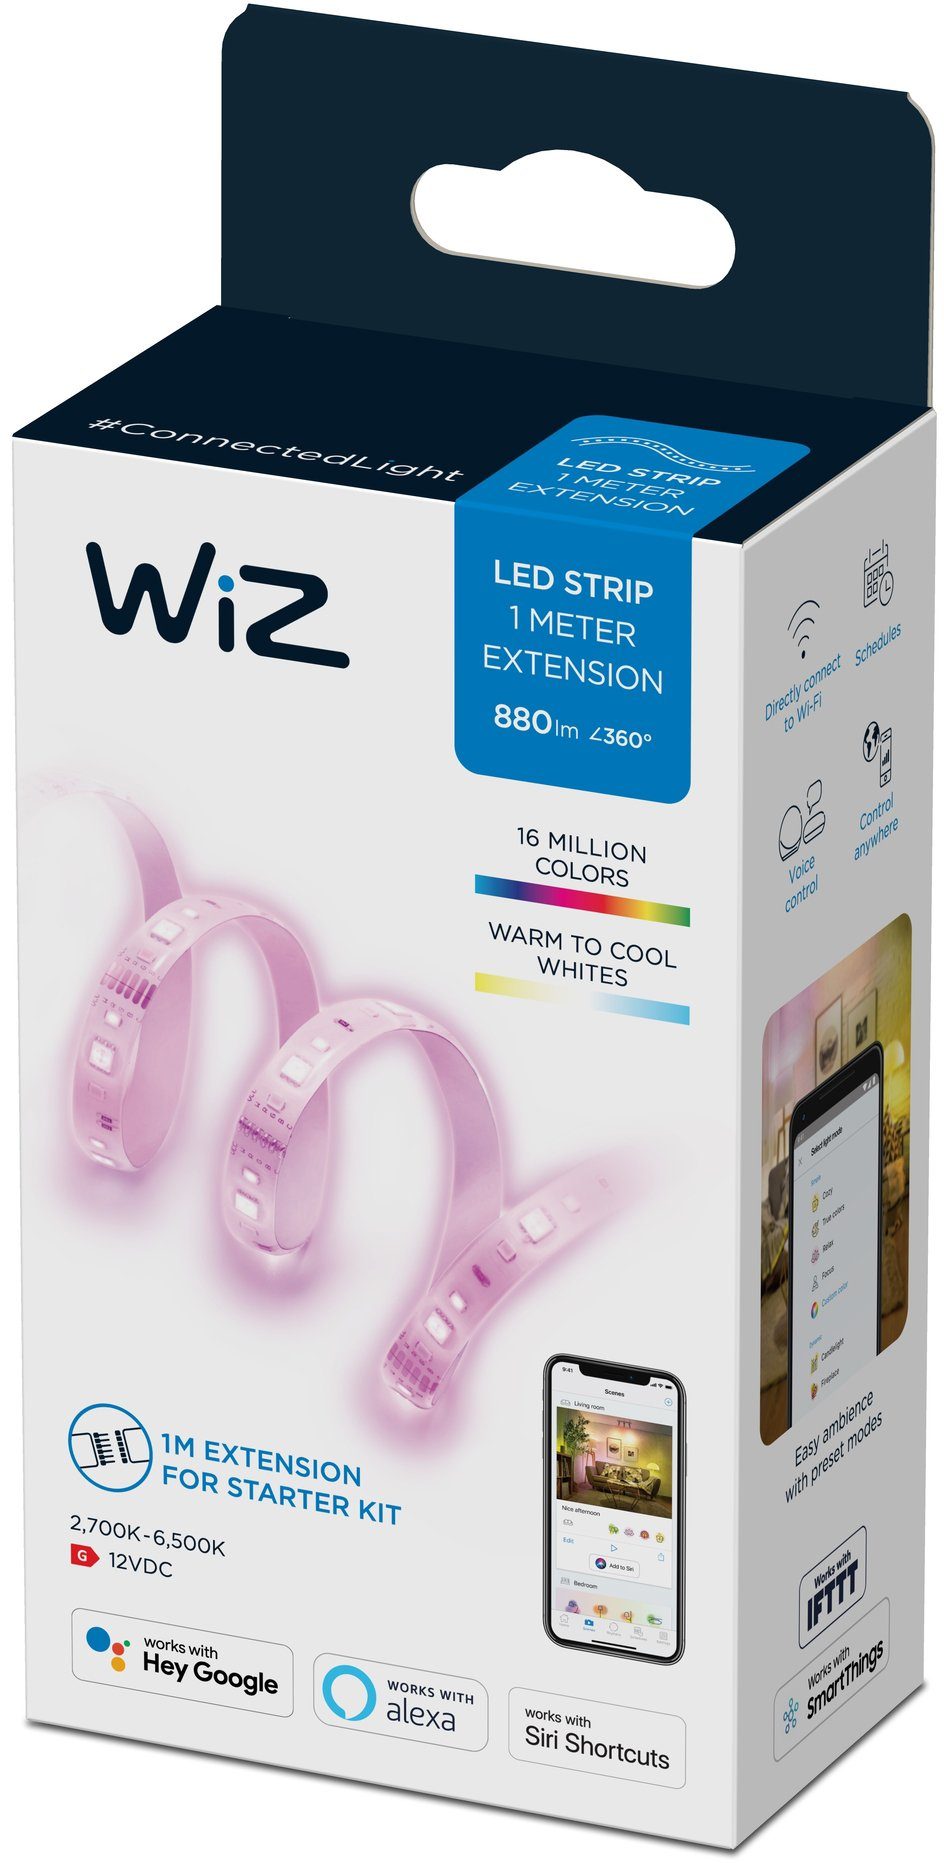 WiZ LED Stripe White&Color Lightstrip 880lm Zuhause für flexibles und Einzelpack, vielfältiges Extension 1m Ihr Lichterlebnis